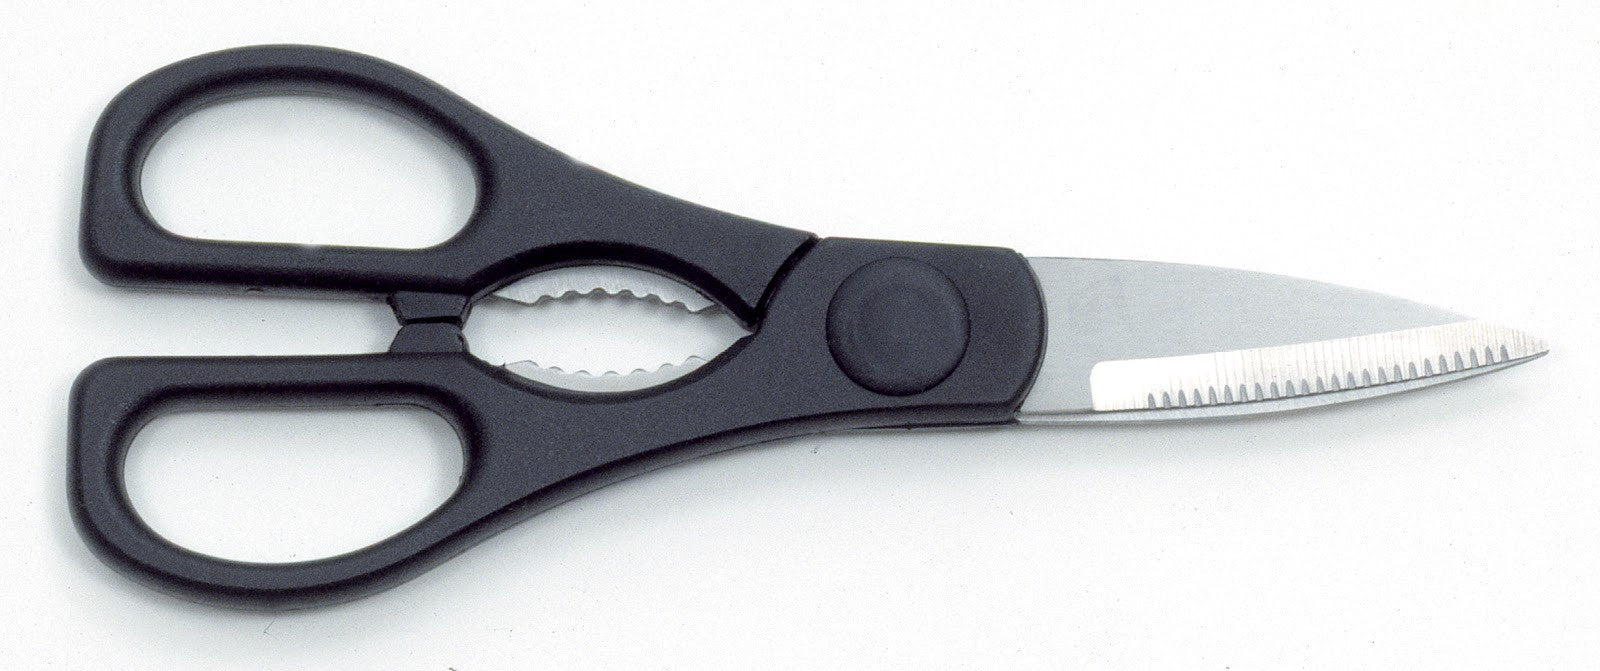 All-Purpose Utility Scissors